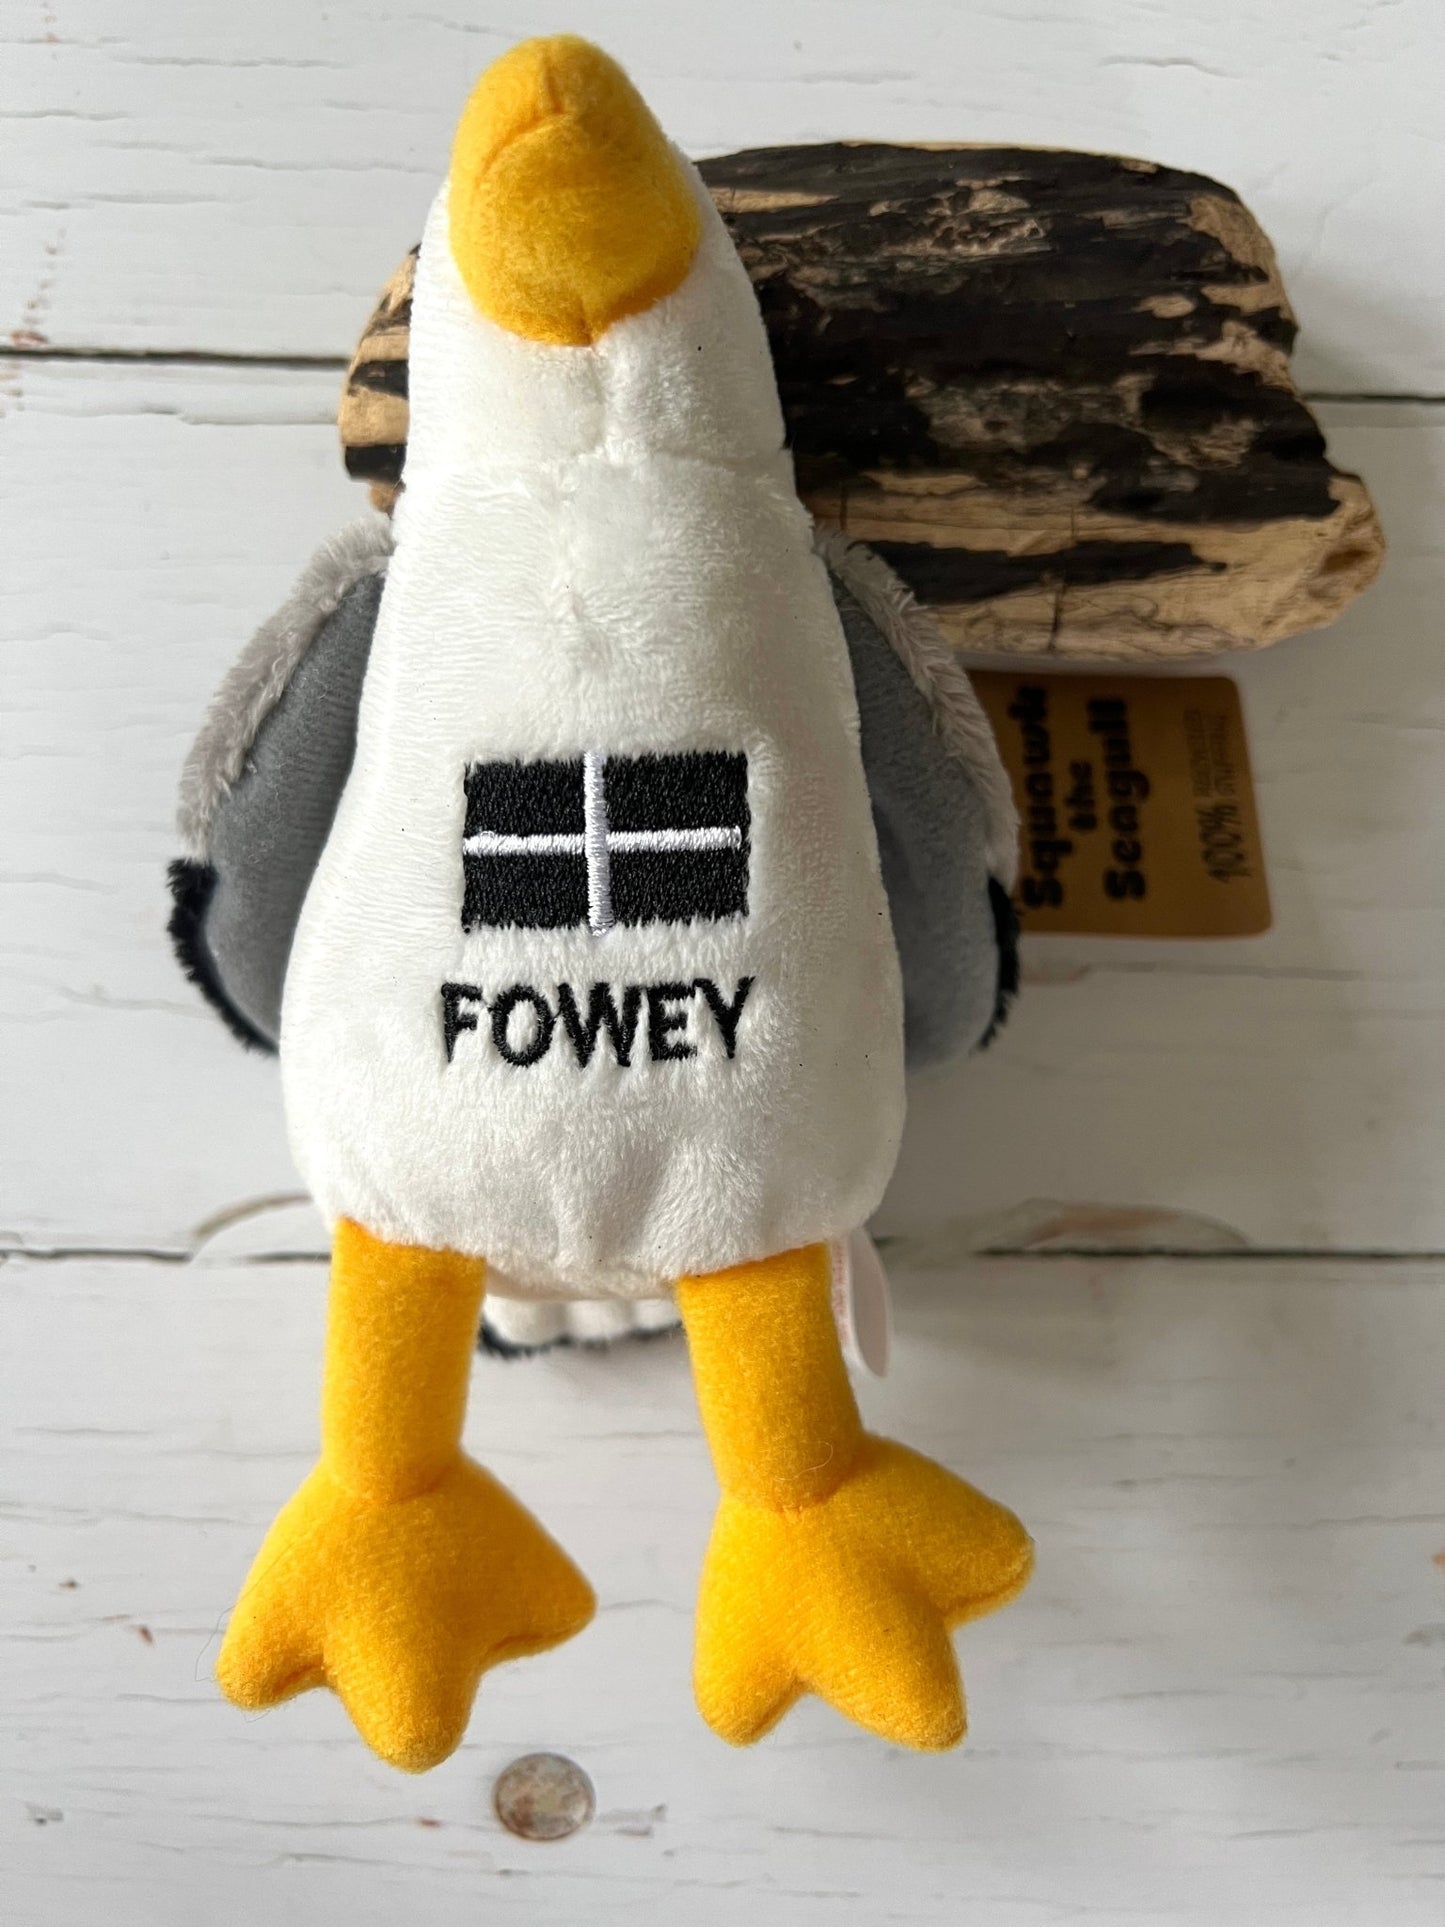 Fowey Seagull Soft Plush Toy - Readymoney Beach Shop